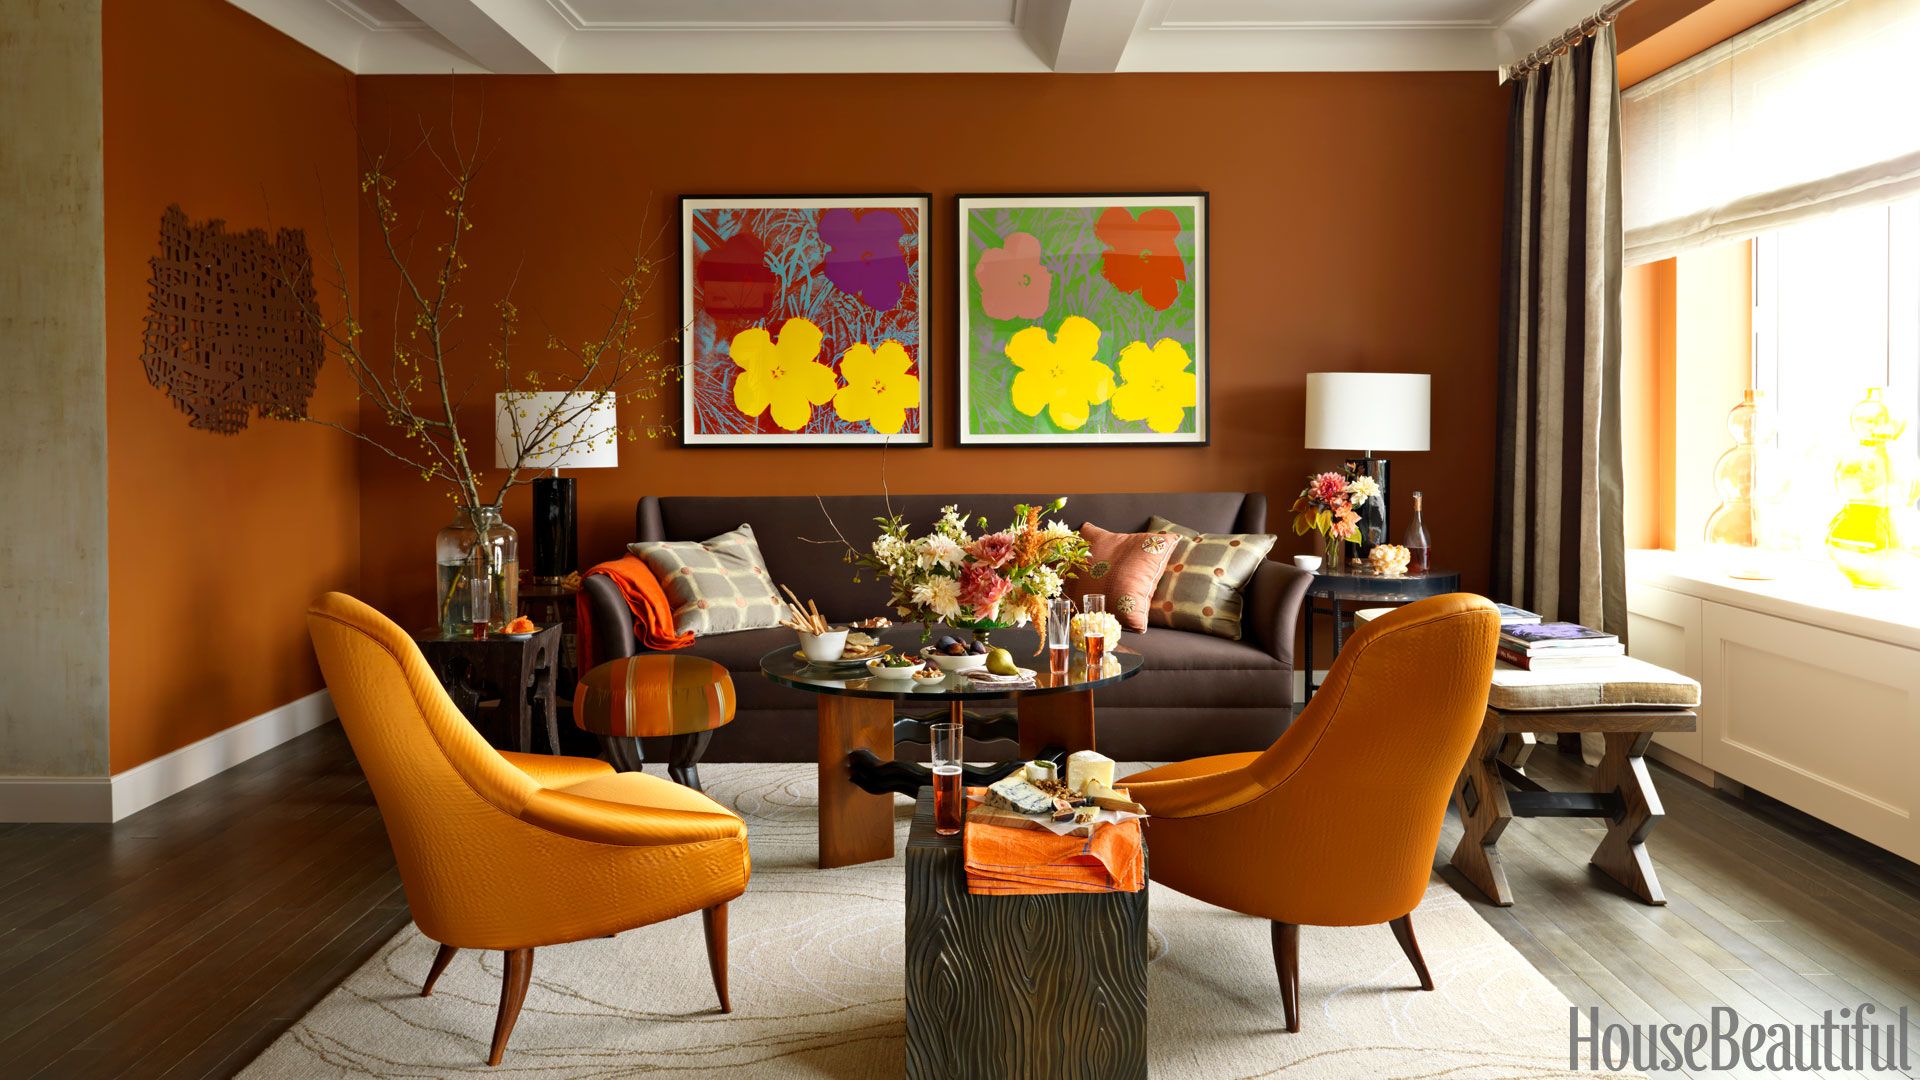 9 Best Orange Paint Colors for a Vibrant Home